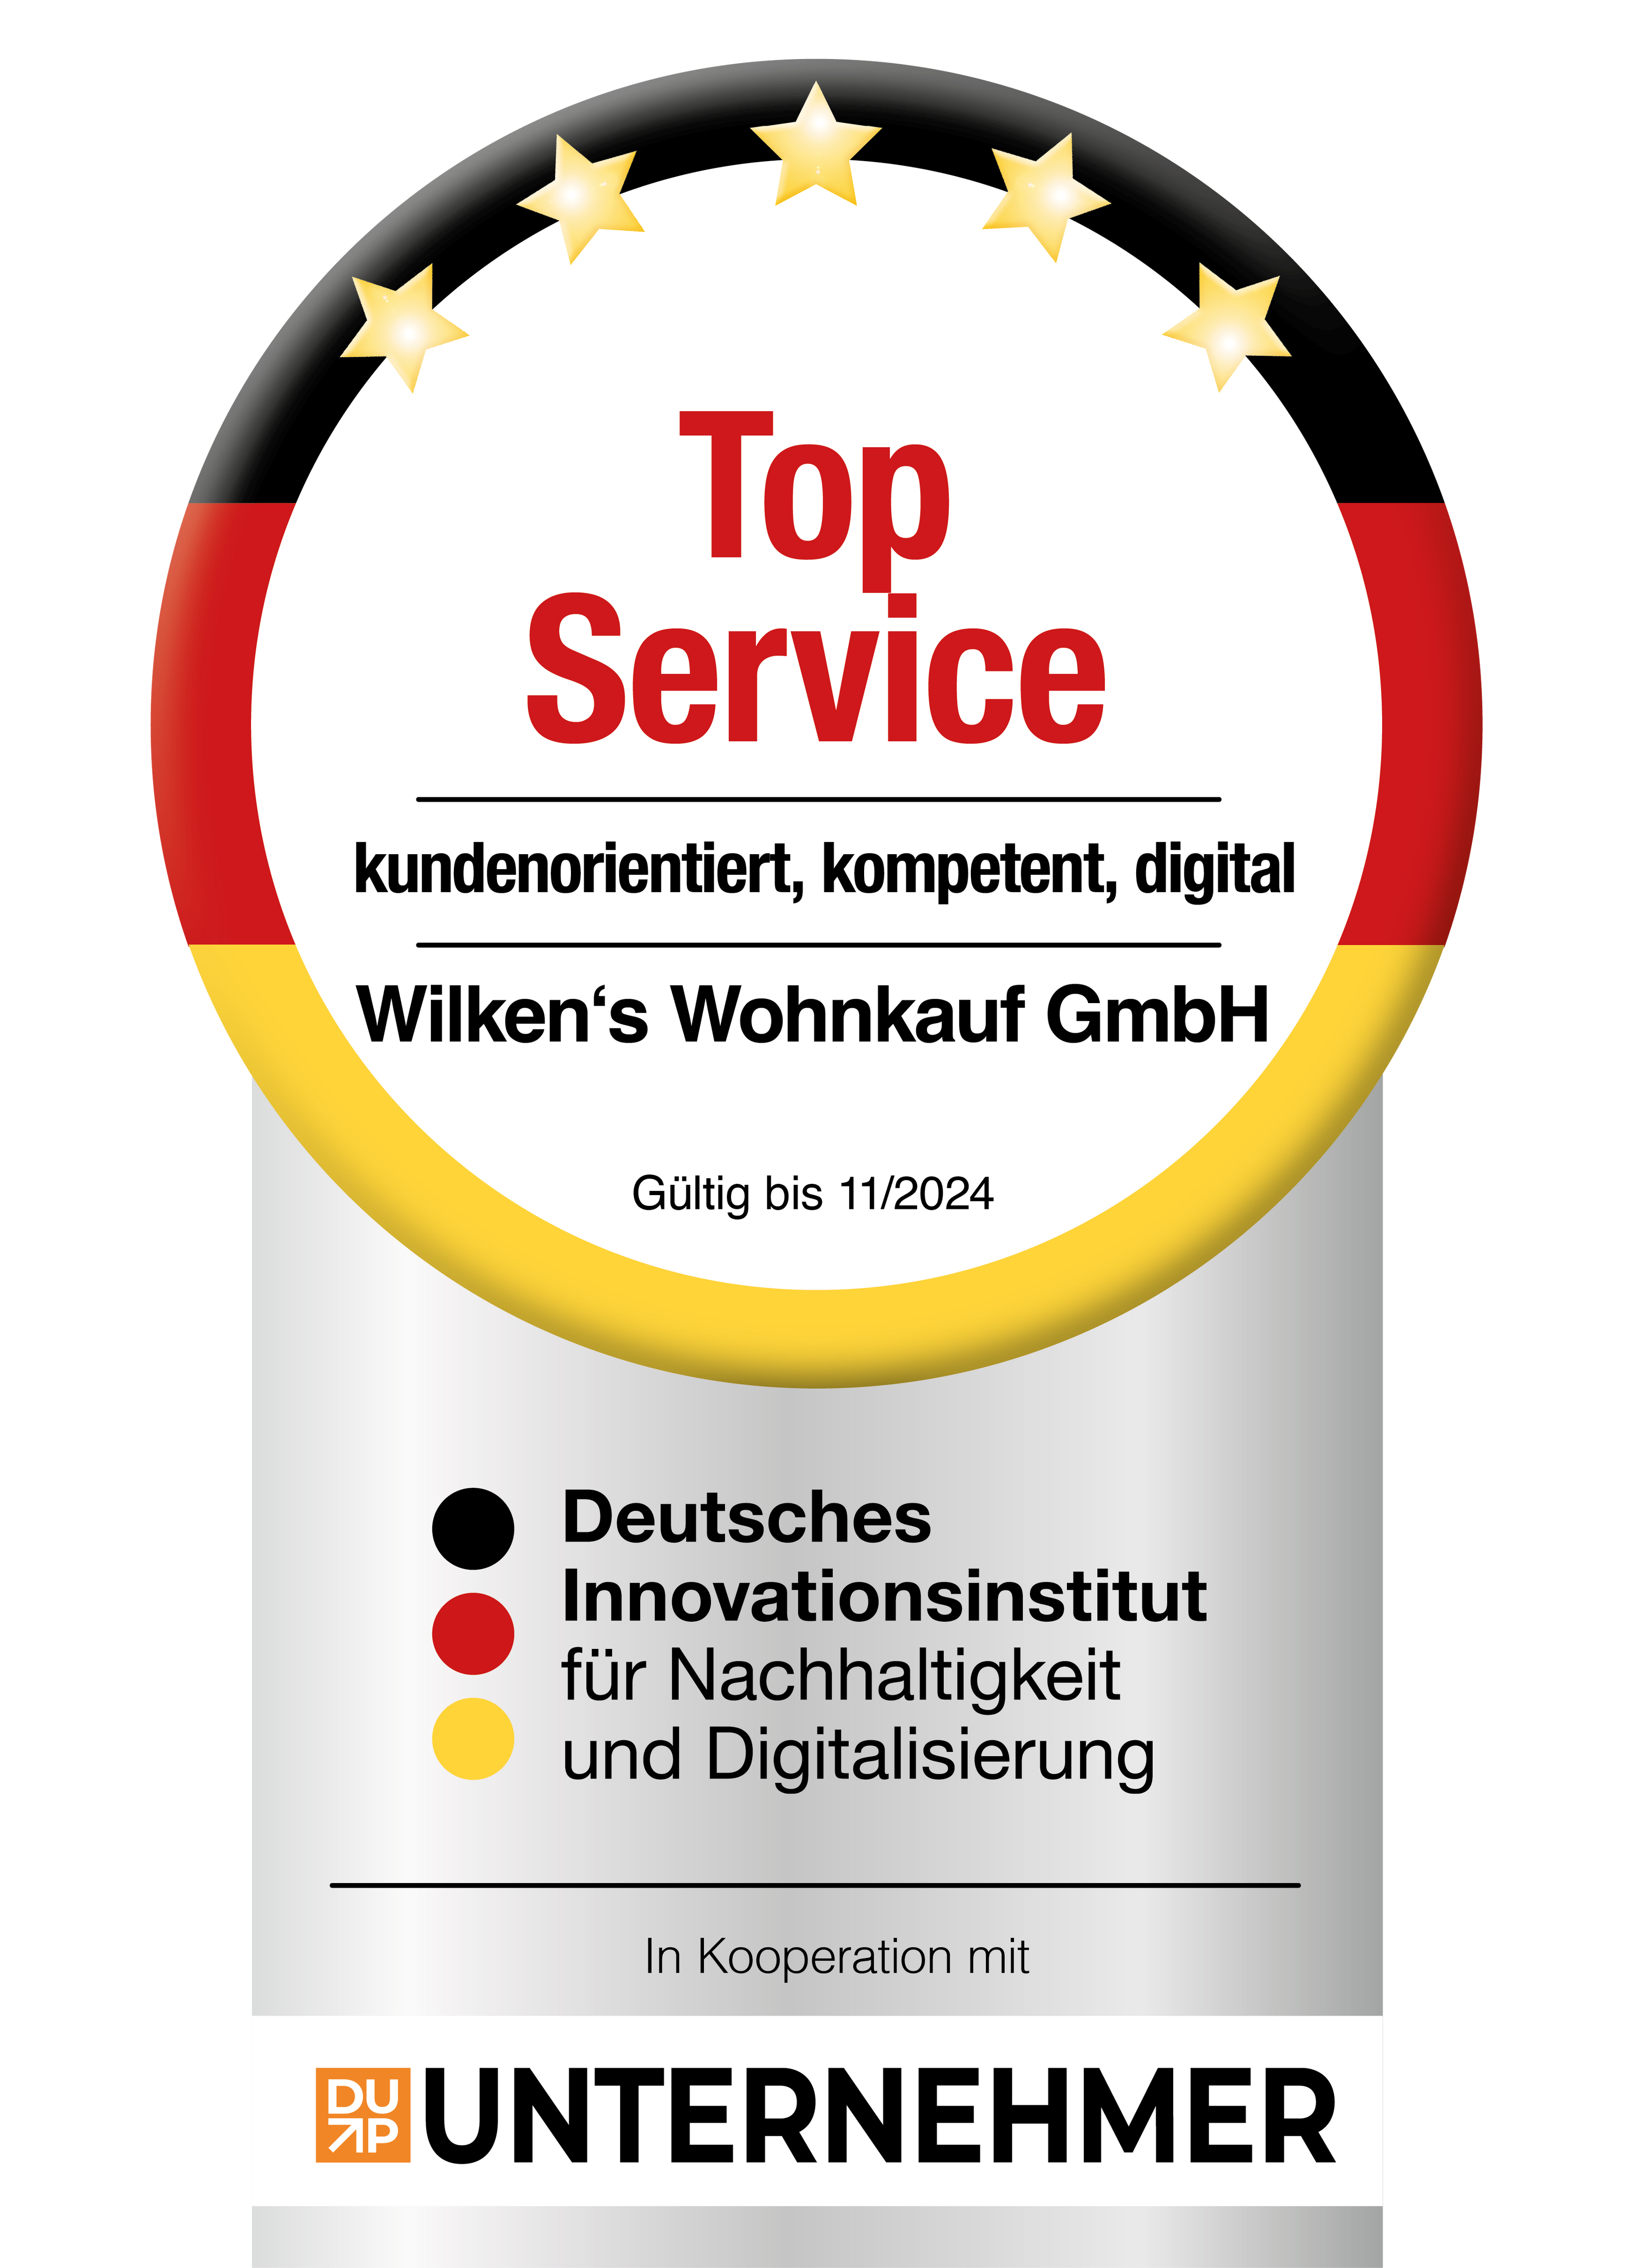 Top Service - kundenorientiert, kompetent, digital - Wilken's Wohnkauf GmbH